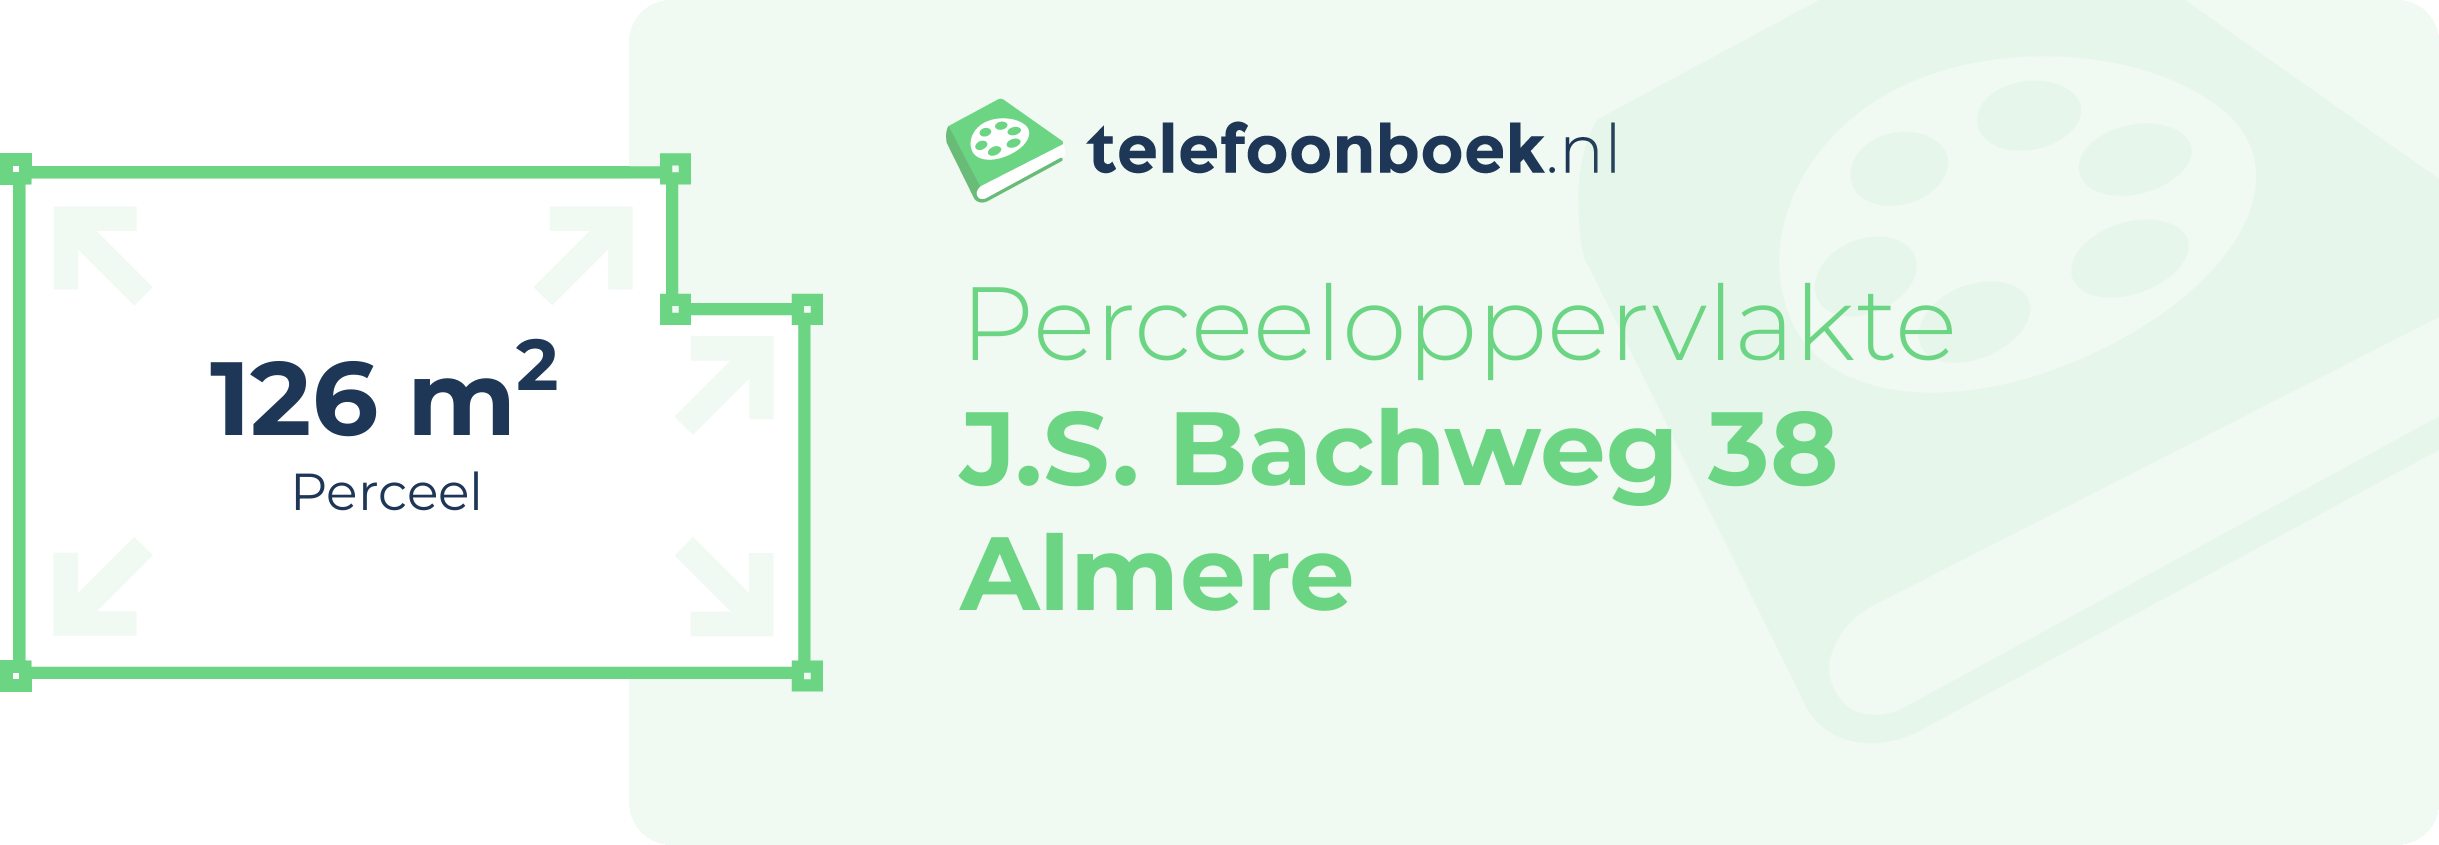 Perceeloppervlakte J.S. Bachweg 38 Almere